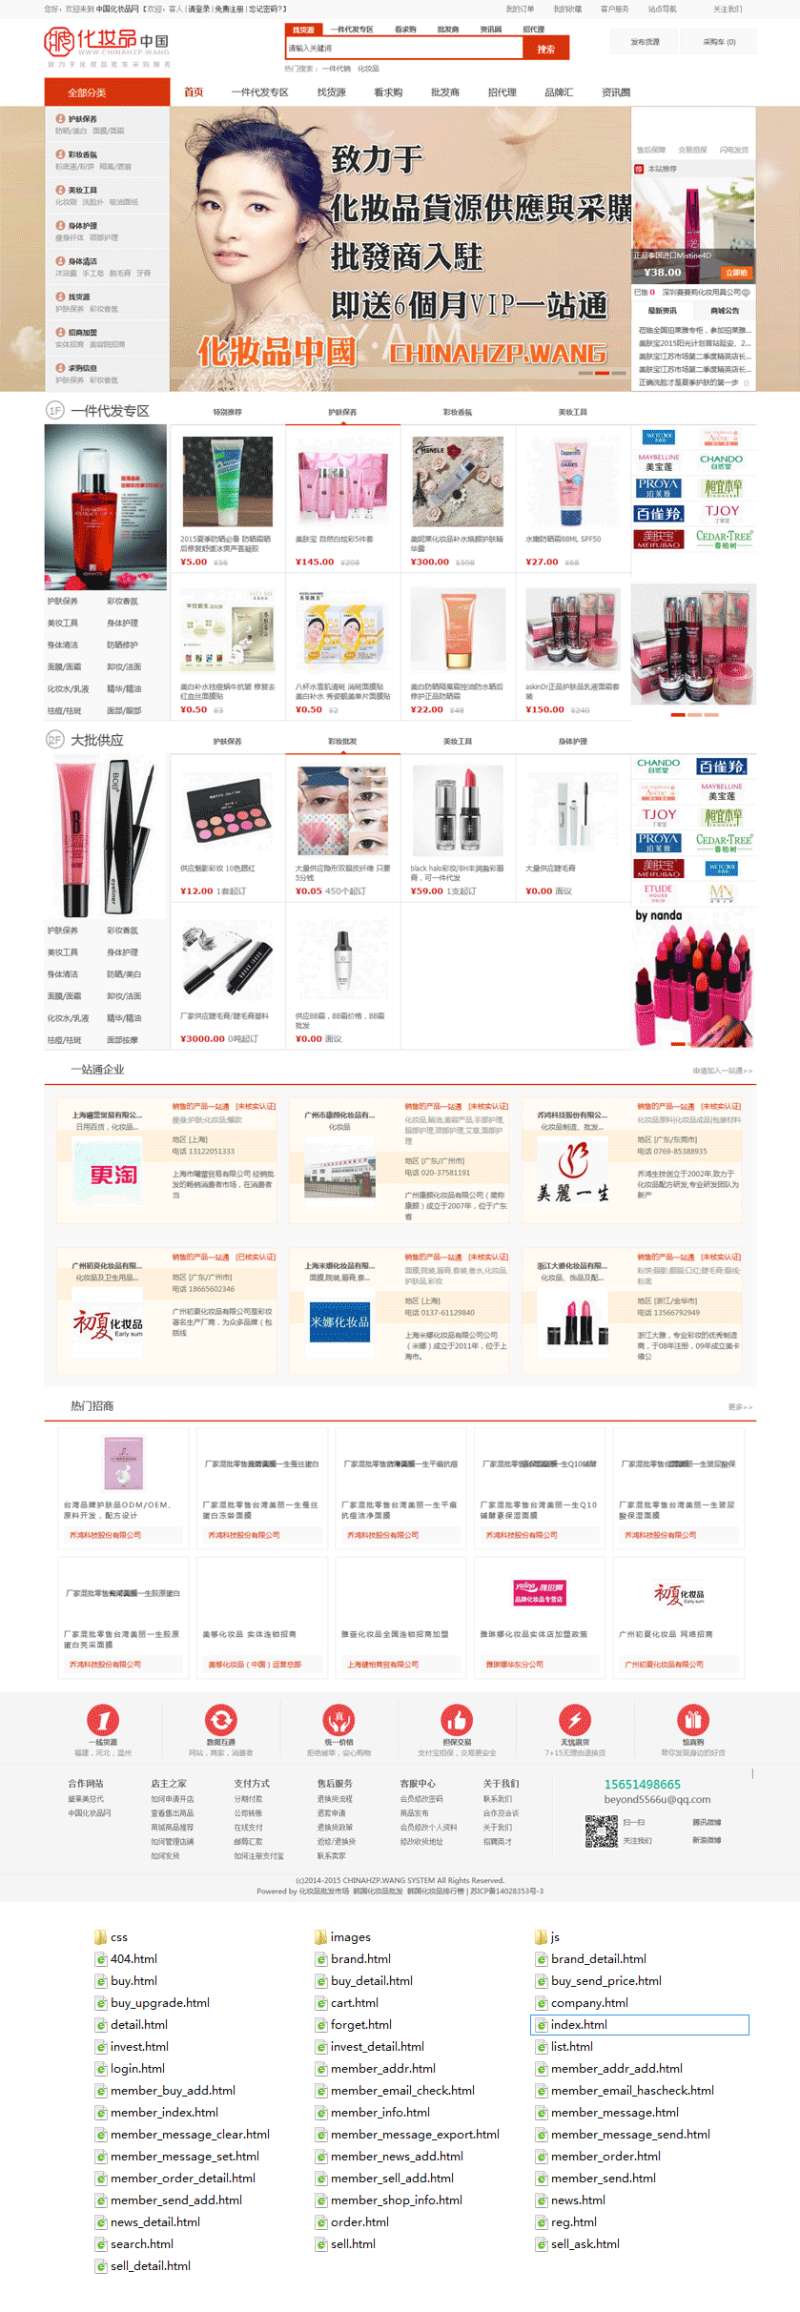 仿中国化妆品商城网站整站模板html源码_商城网站模板插图源码资源库